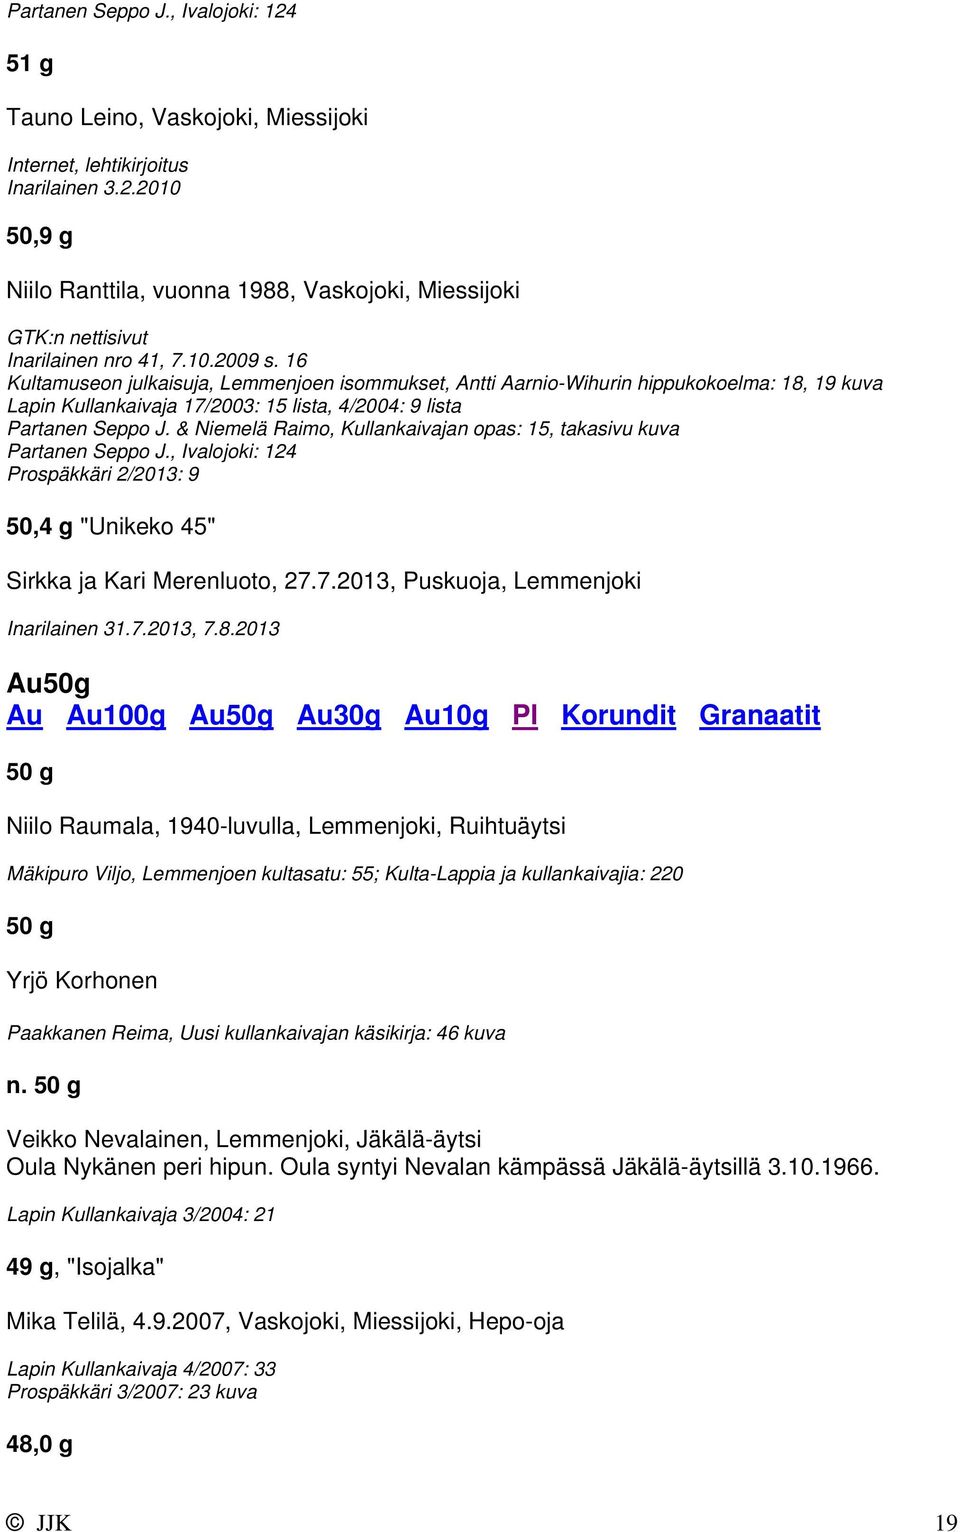 & Niemelä Raimo, Kullankaivajan opas: 15, takasivu kuva Partanen Seppo J., Ivalojoki: 124 Prospäkkäri 2/2013: 9 50,4 g "Unikeko 45" Sirkka ja Kari Merenluoto, 27.